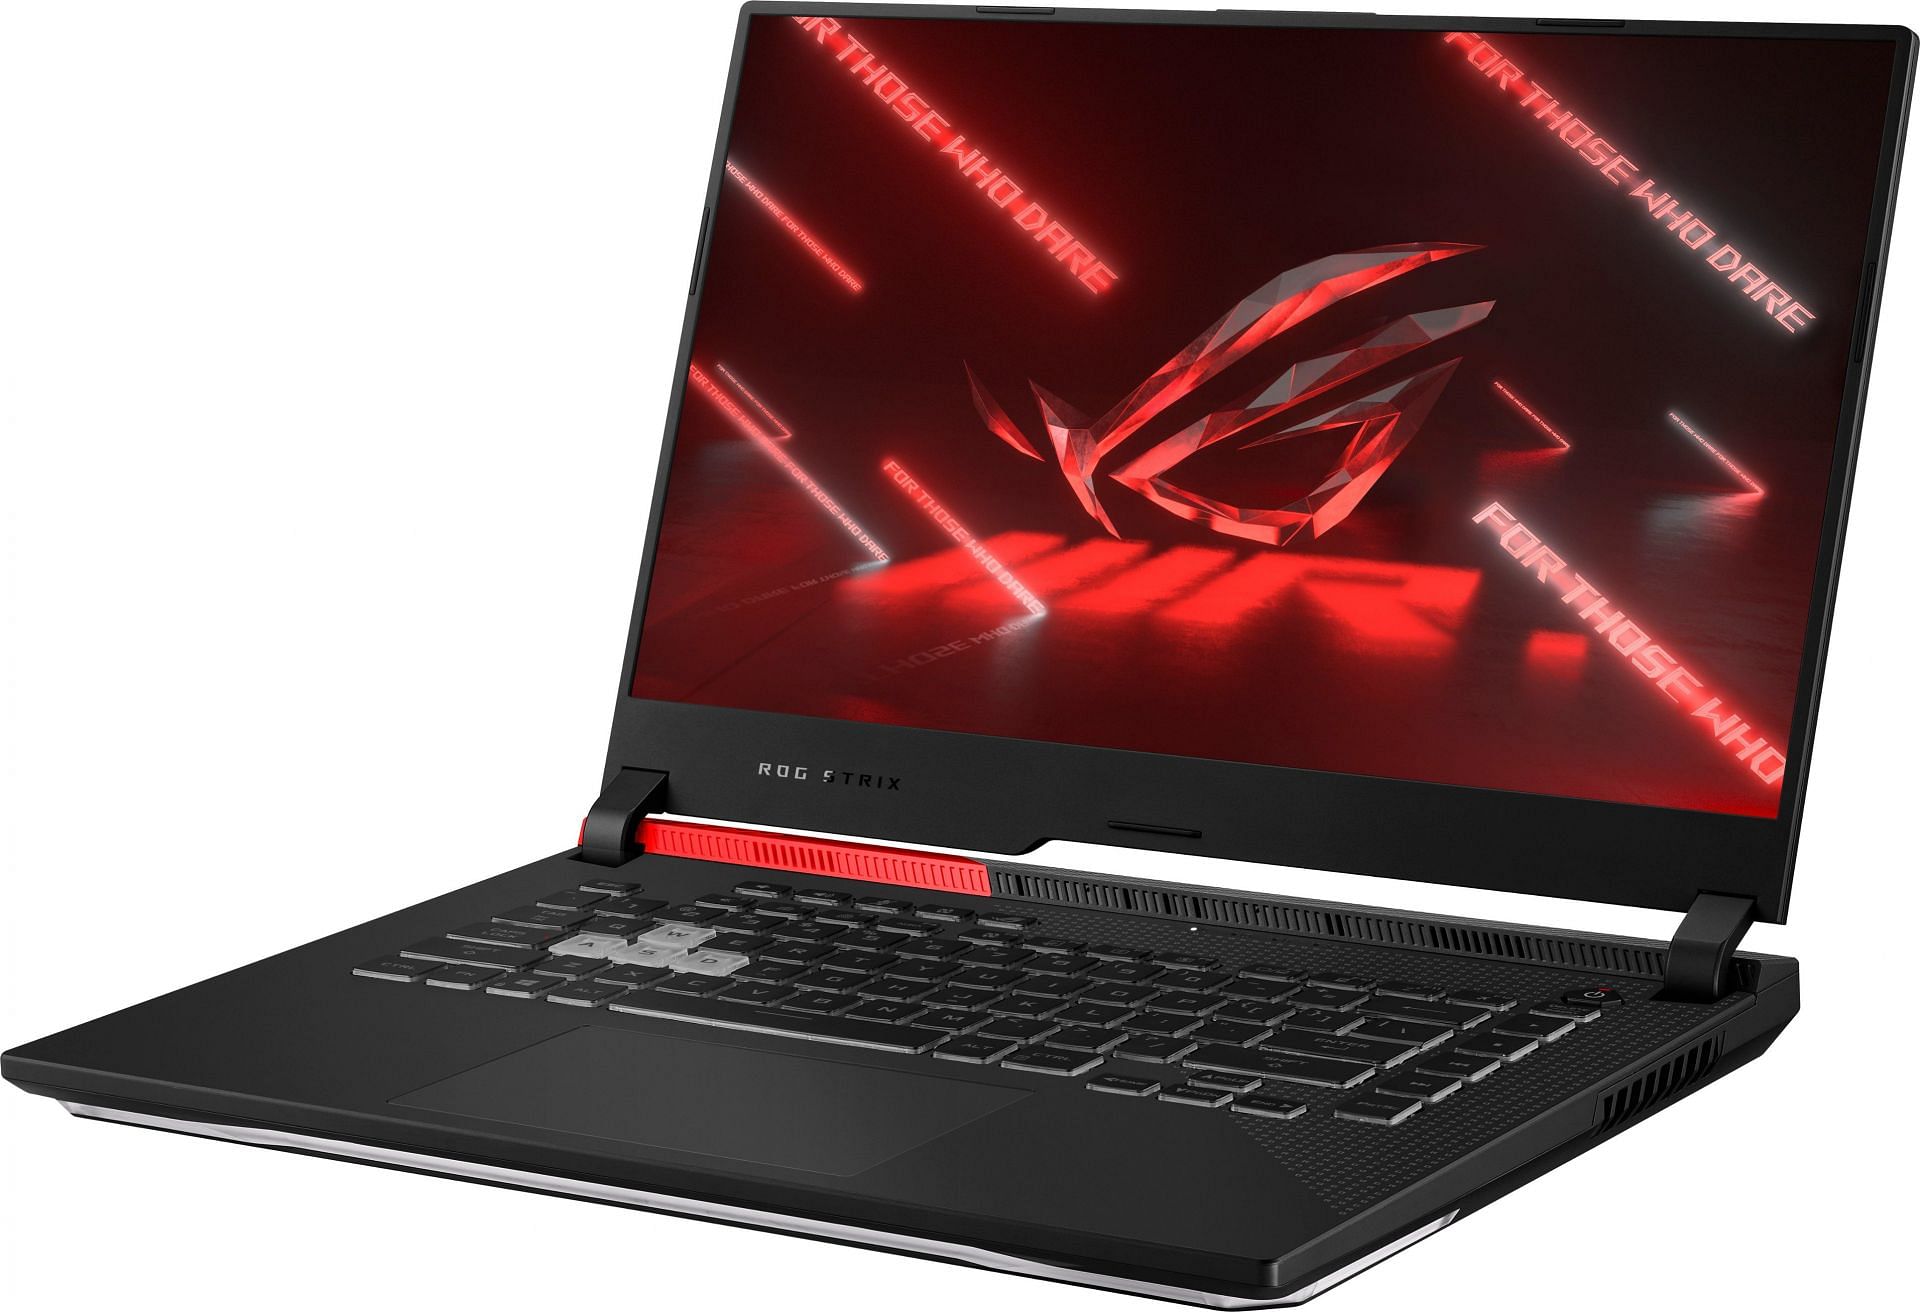 The ASUS ROG Strix G15 laptop (Image via Best Buy)